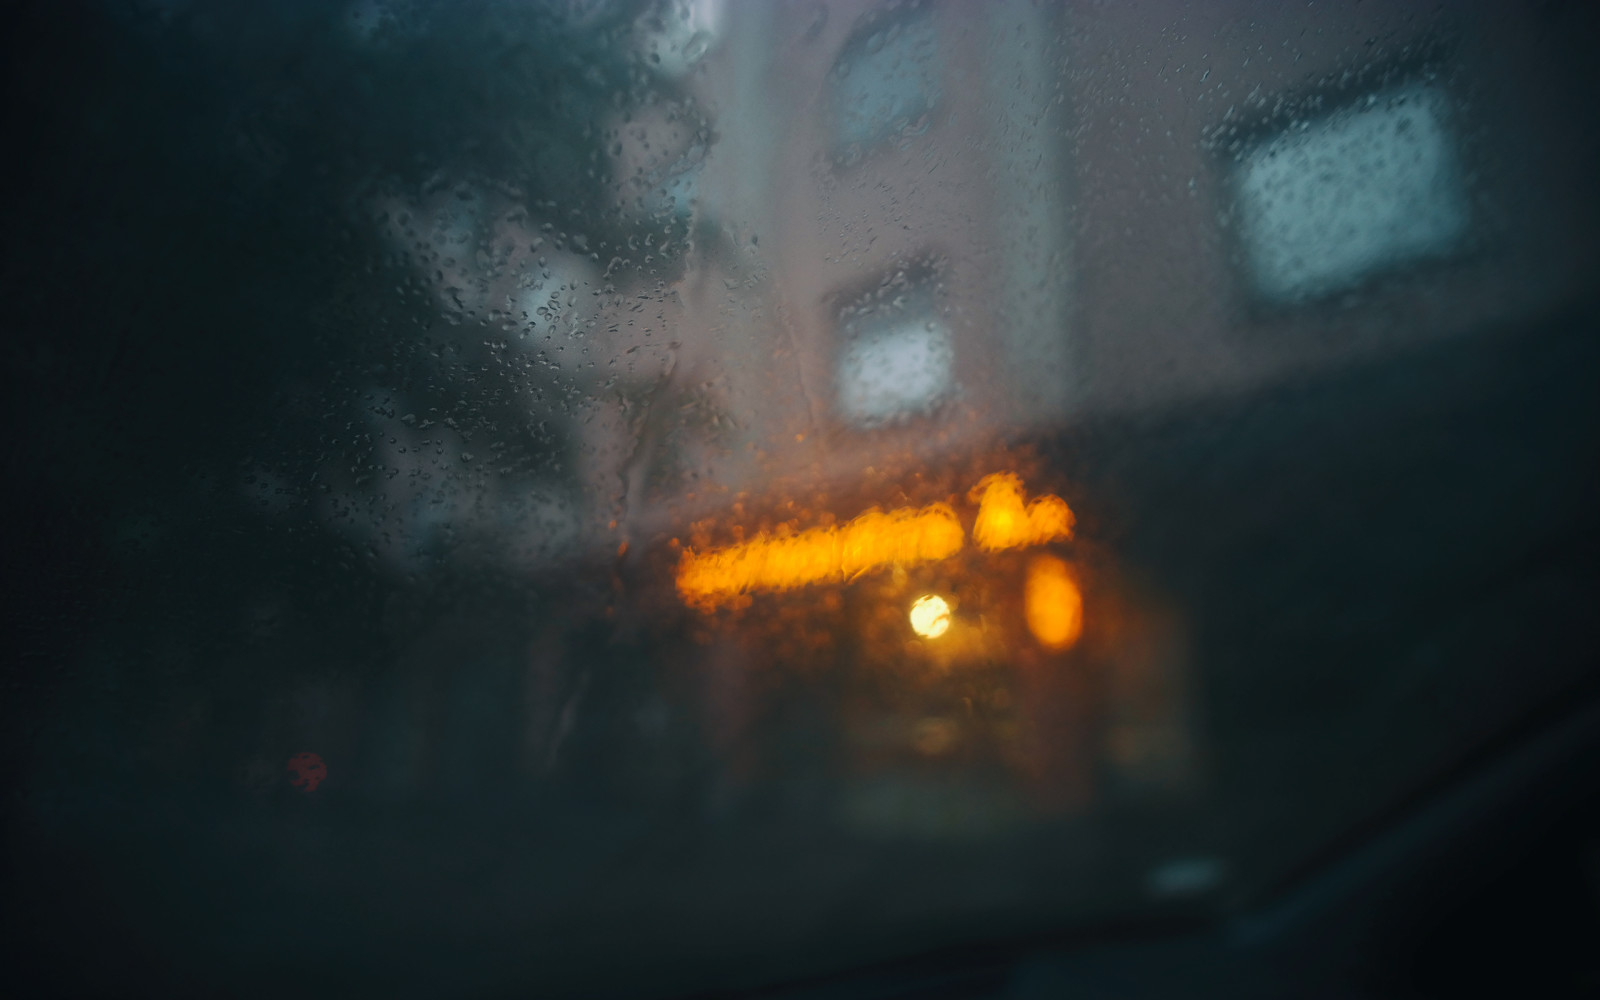 ボケ, 都市, ガラス, 雨, 落とす